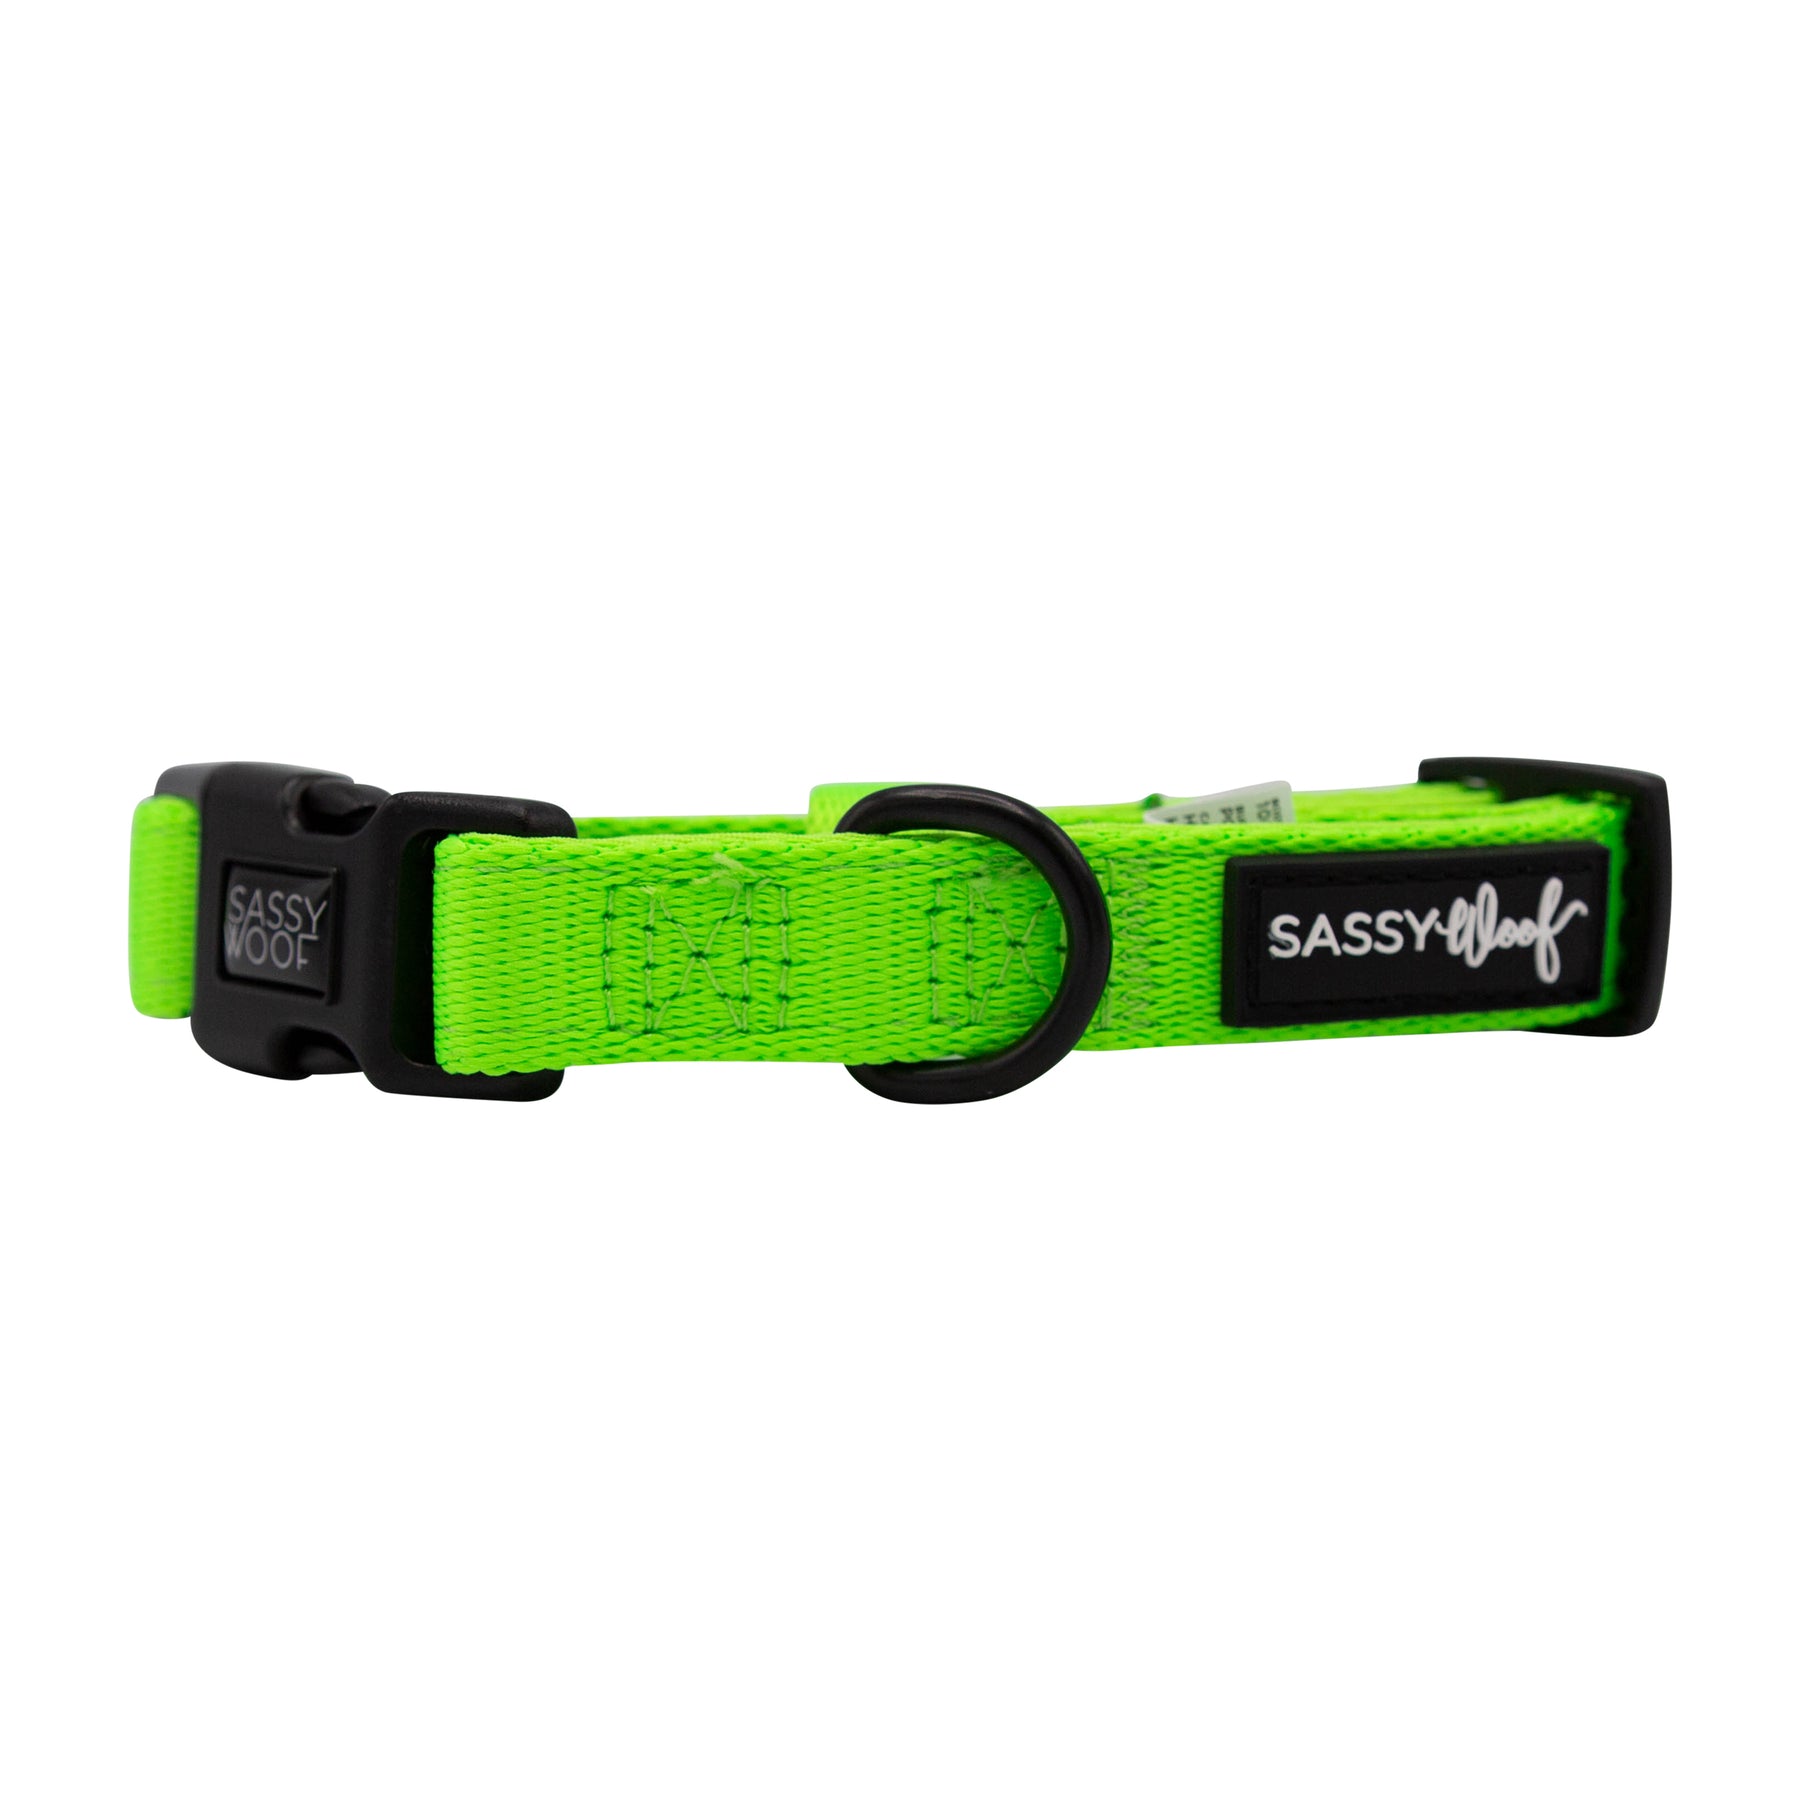 Dog Collar - Neon Green